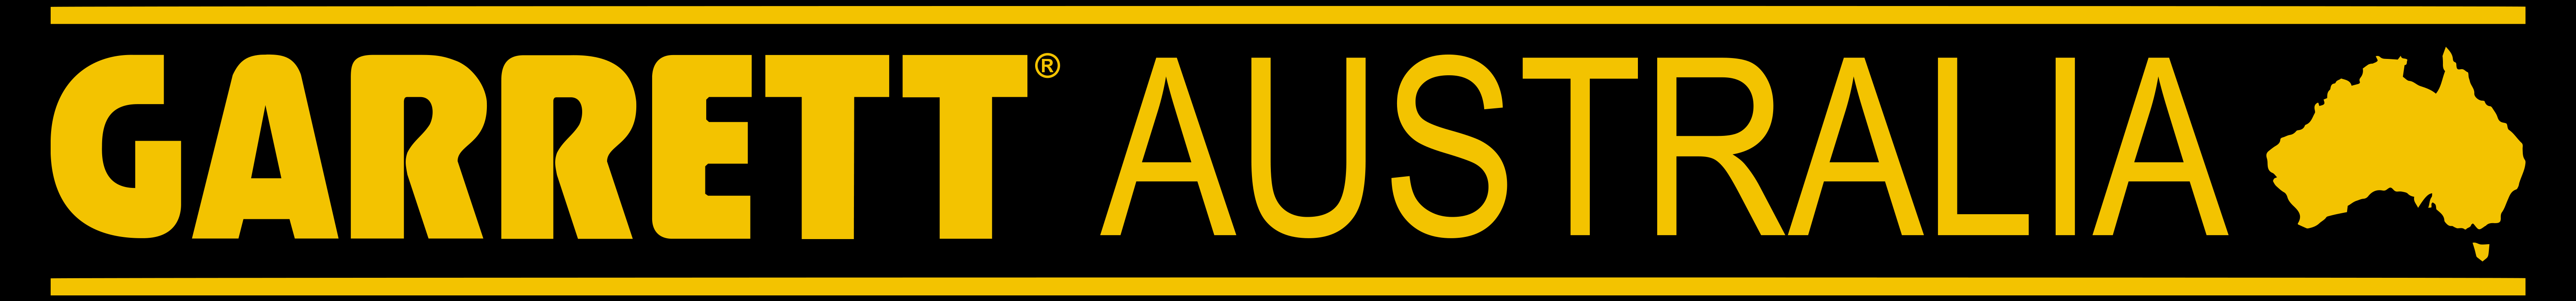 Garrett Australia logo